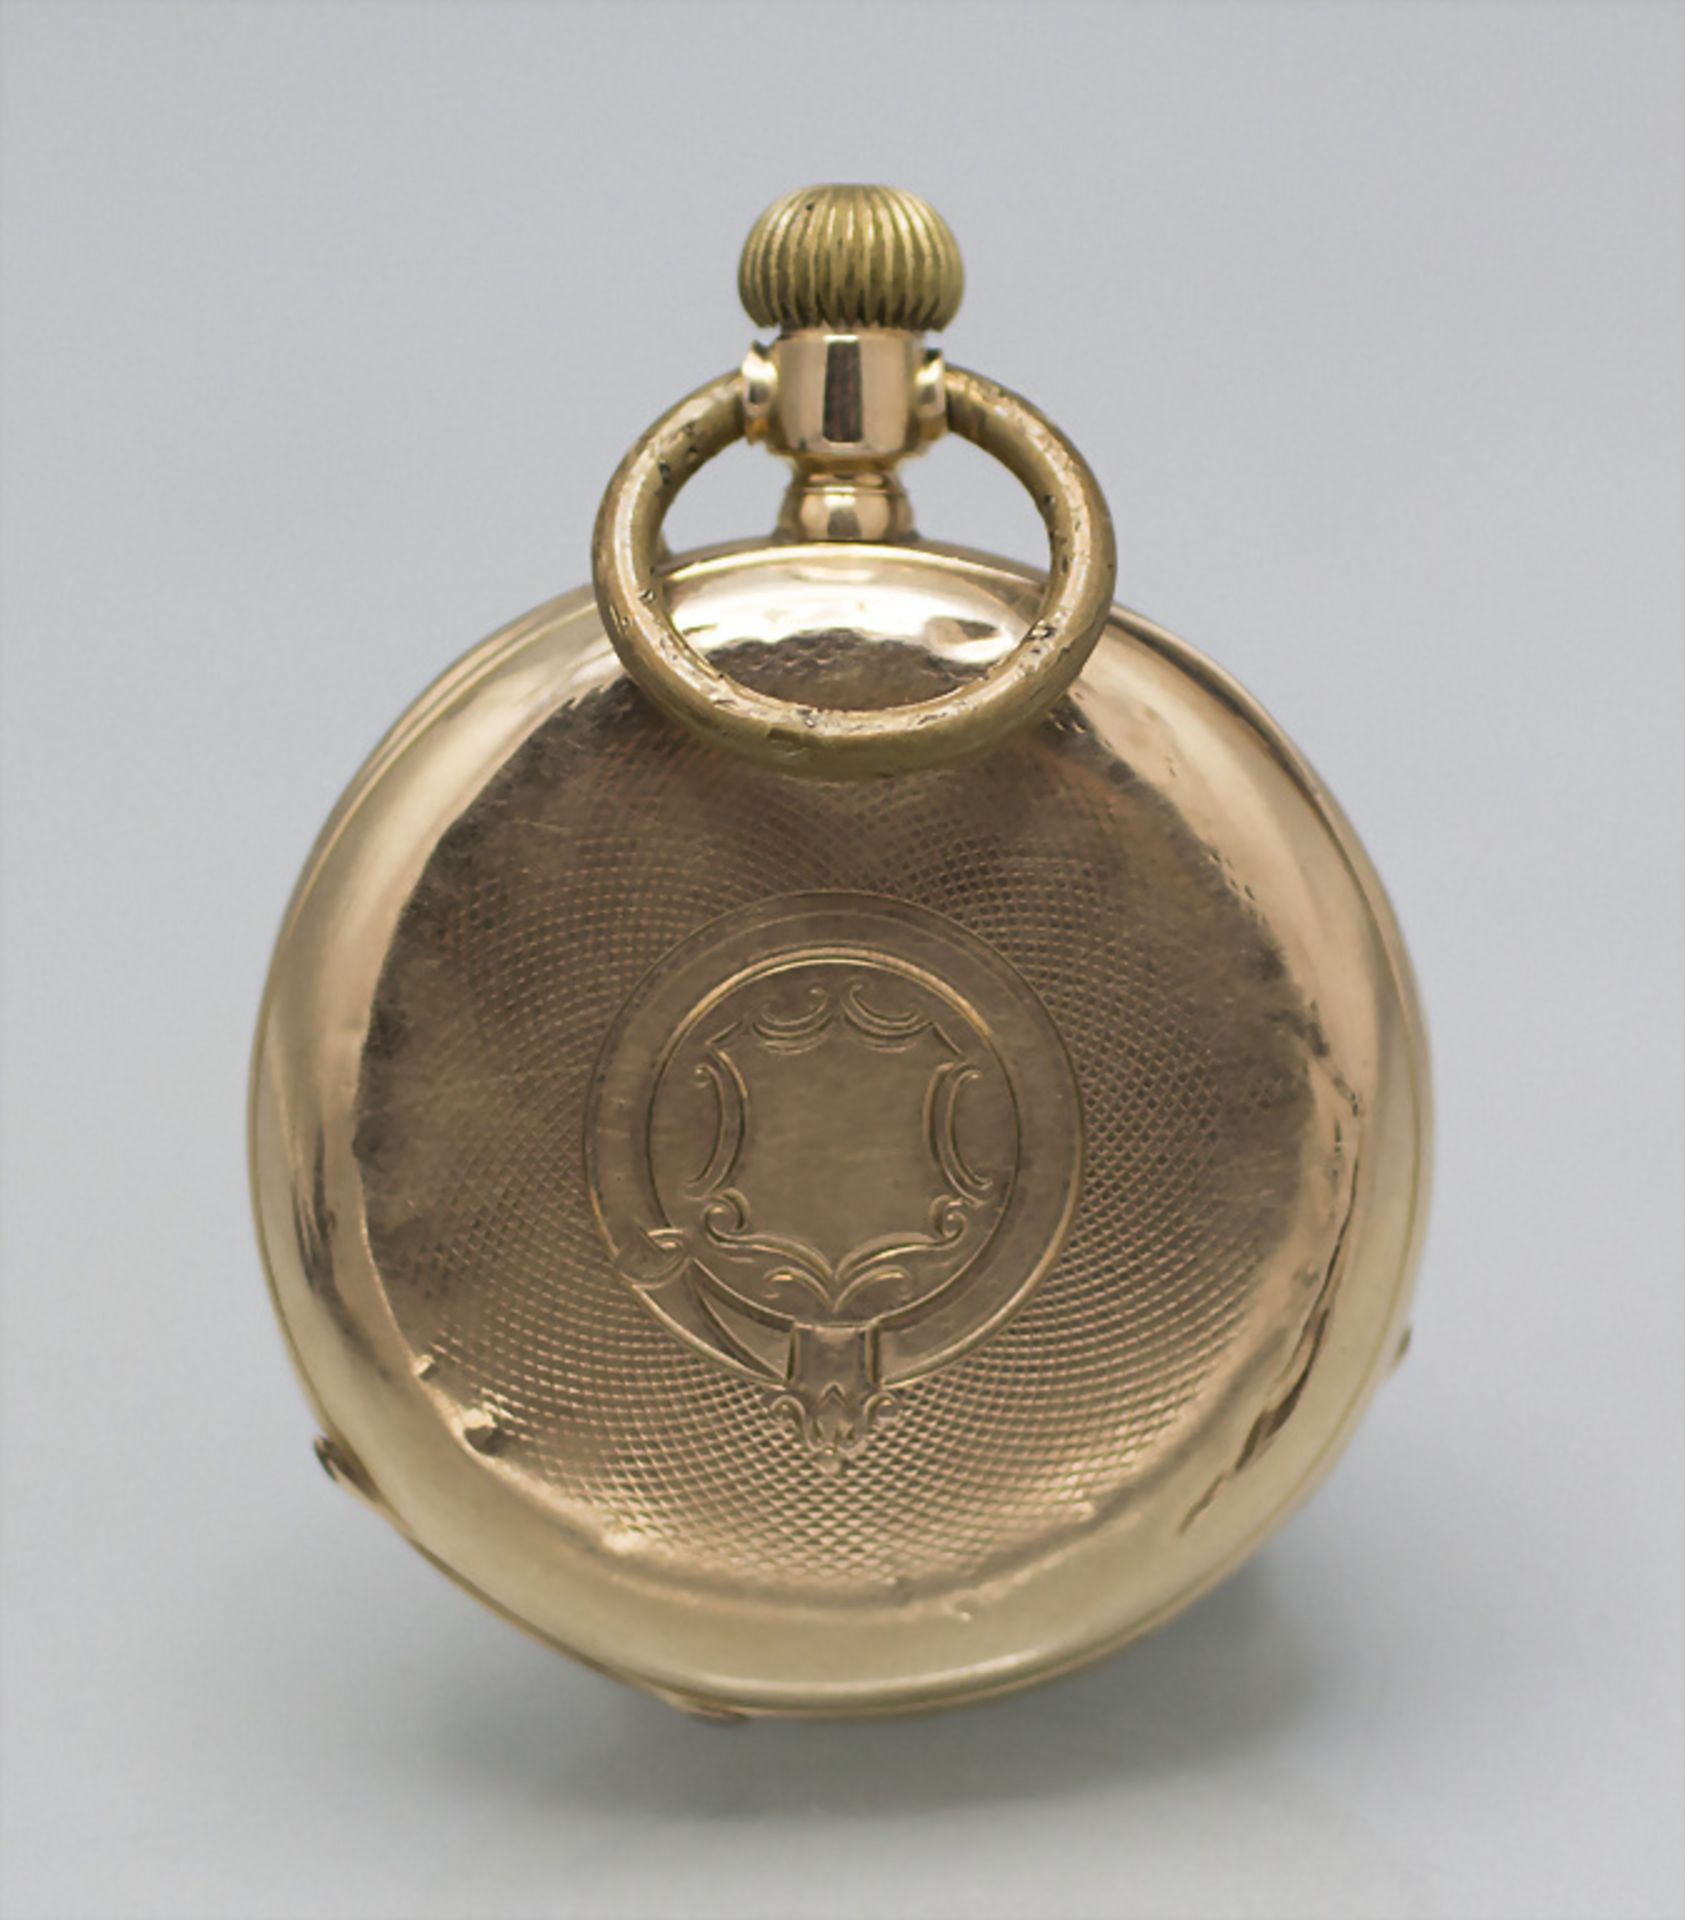 Offene Herrentaschenuhr / An 14 ct gold pocket watch, um 1900 - Image 5 of 7